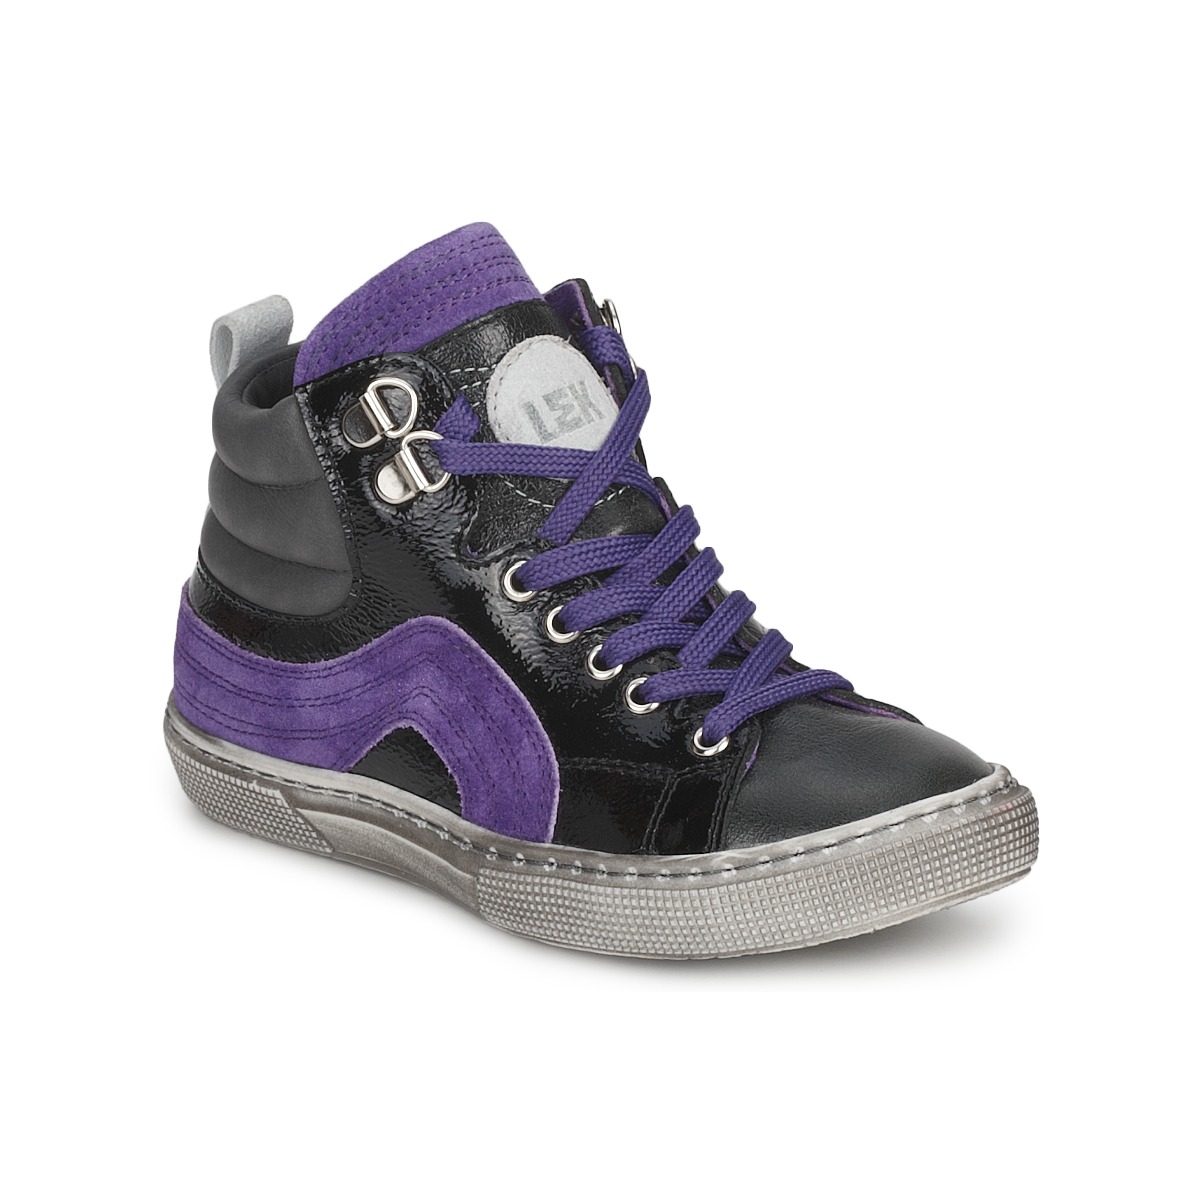 Schoenen Jongens Hoge sneakers Little Mary OPTIMAL Zwart / Violet